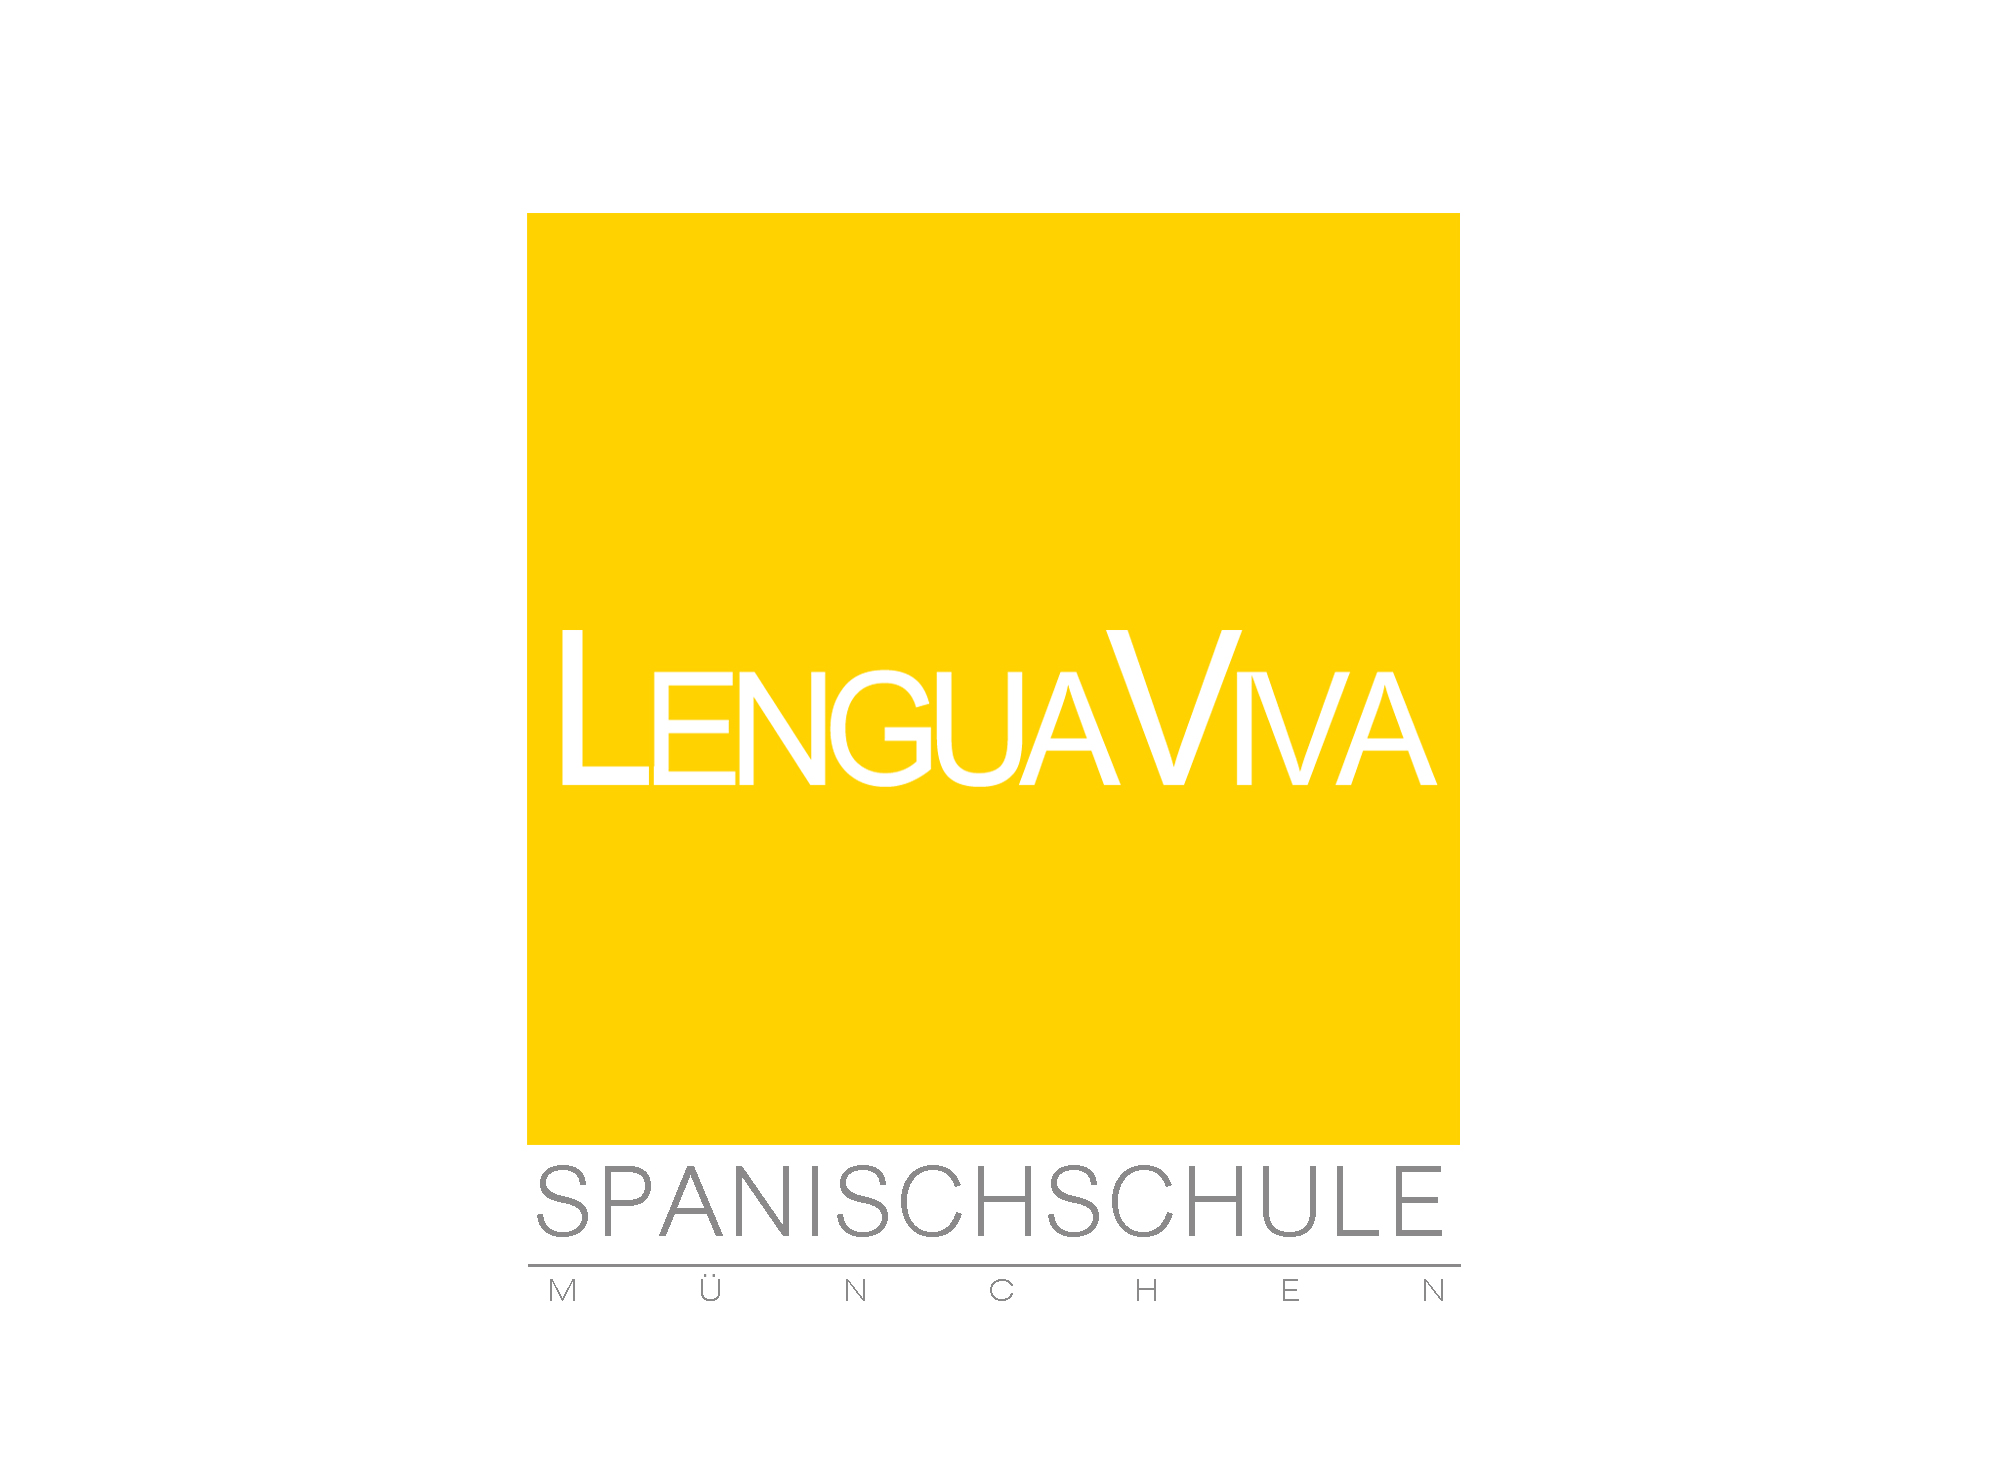 Logo Spanischschule LenguaViva